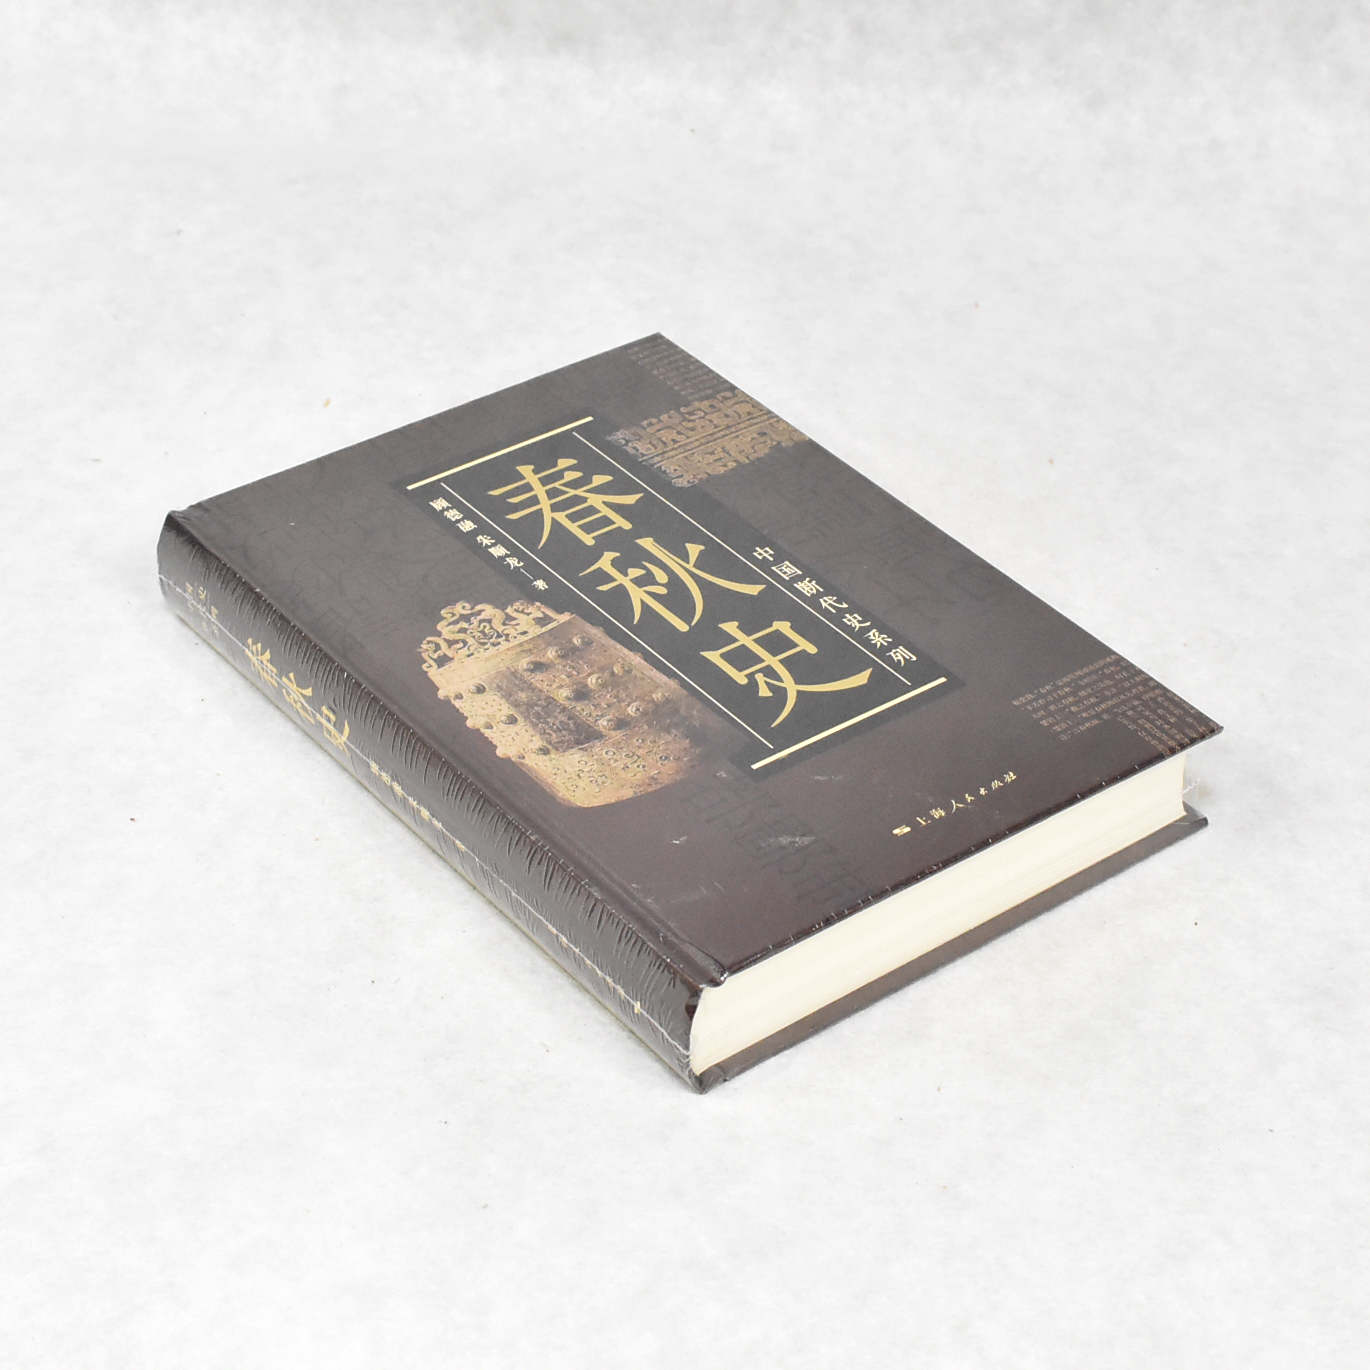 正版 春秋史 作者: 顾德融 / 朱顺龙  出版社: 上海人民出版社ISBN: 9787208155992